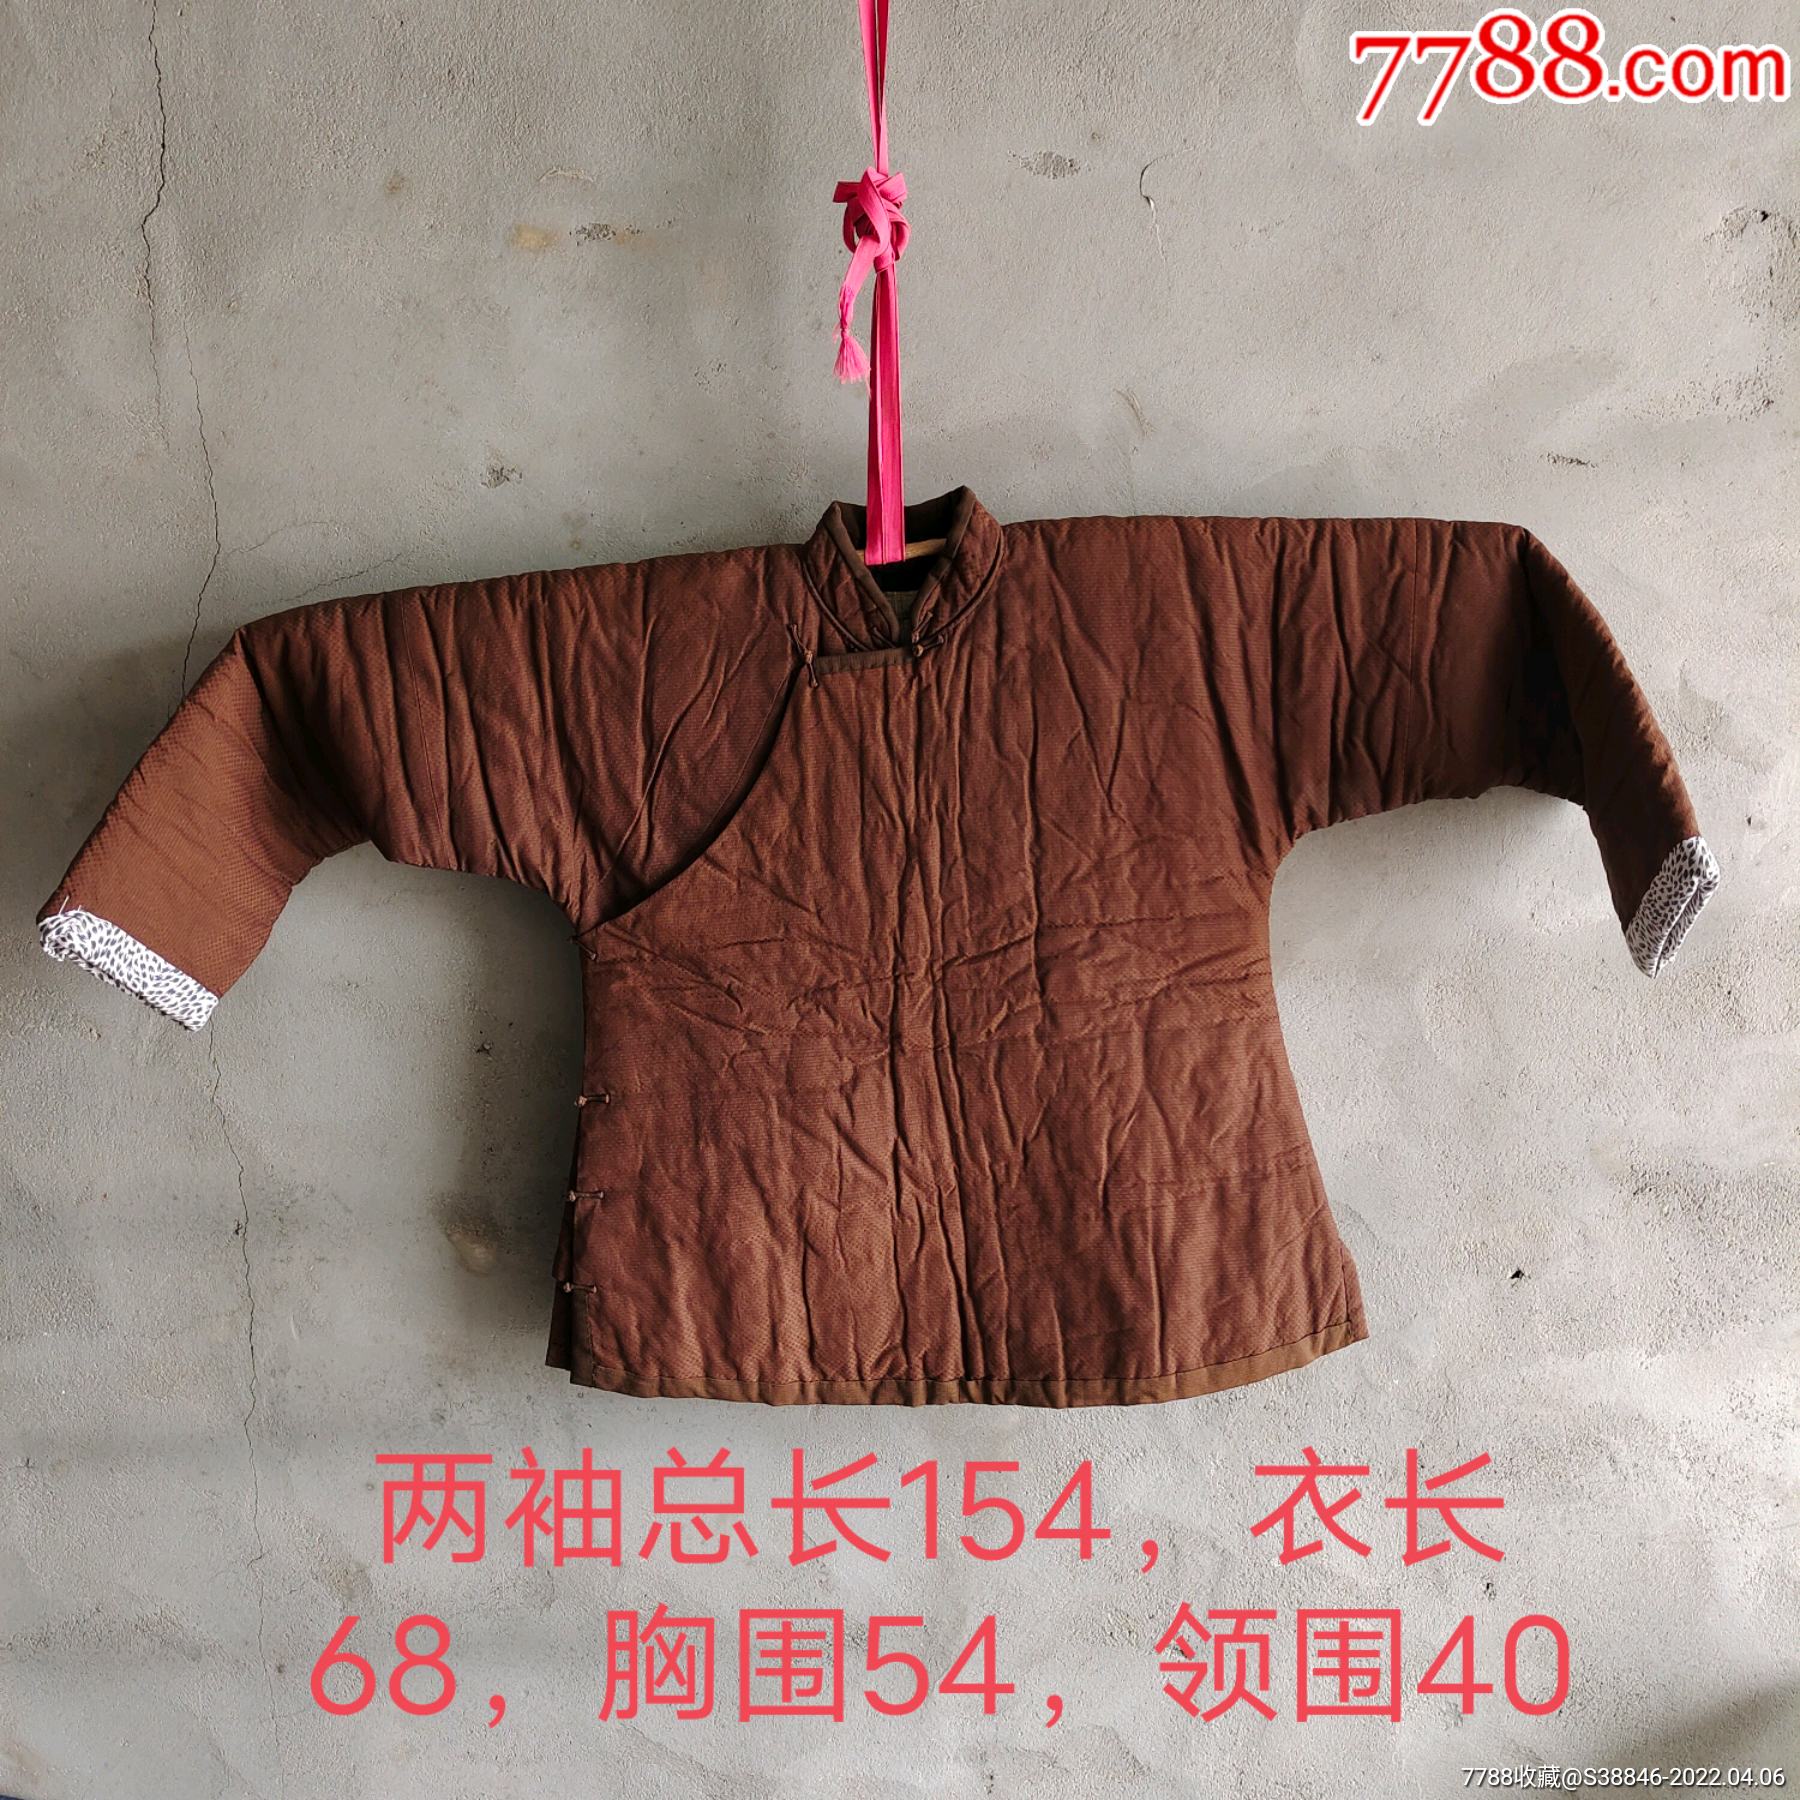 怀旧收藏文革时期褐色大襟棉袄旧衣服